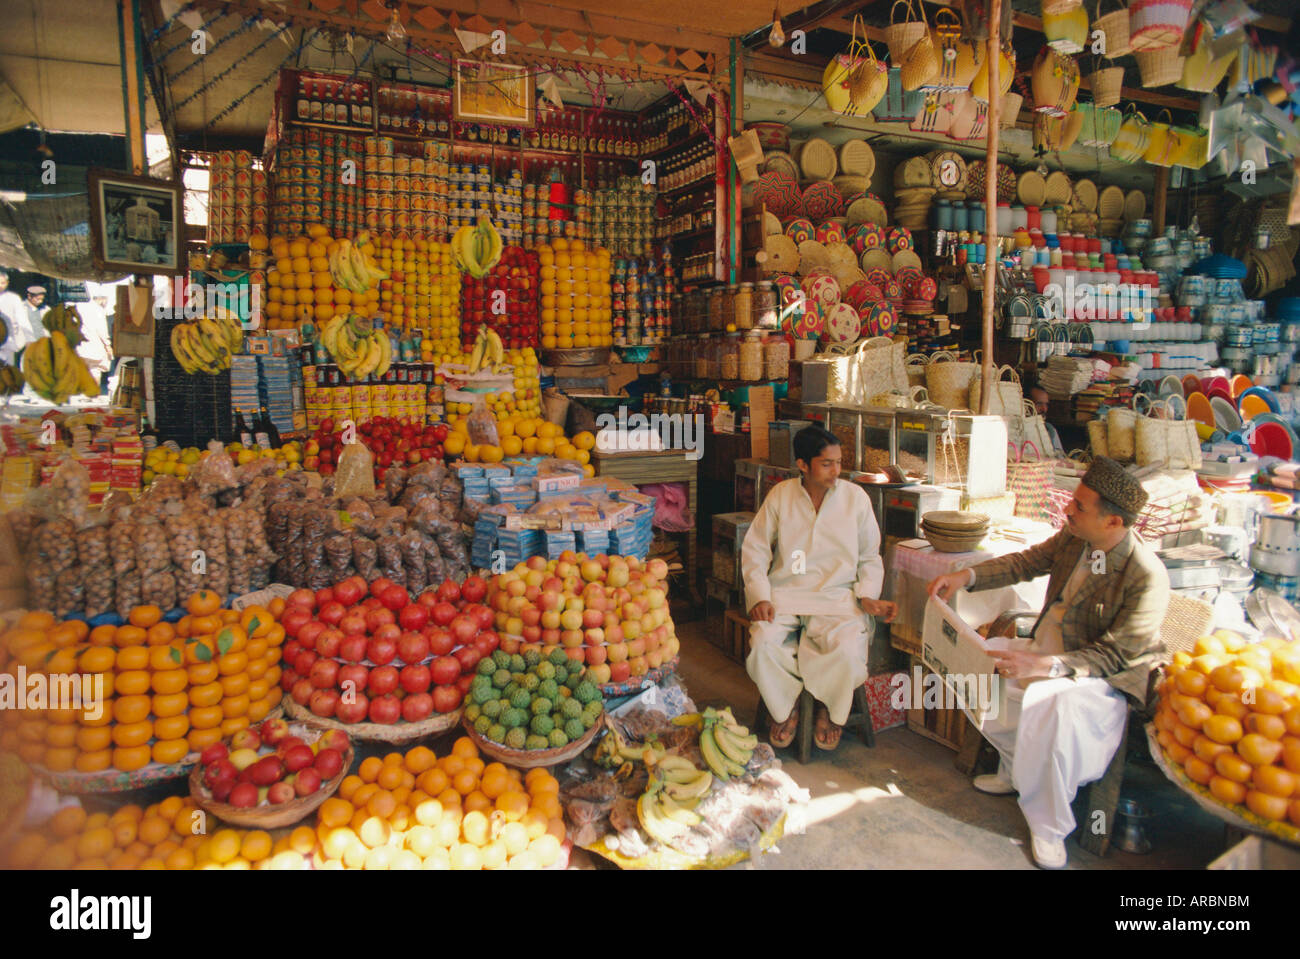 Obst und Korbwaren Stände auf dem Markt, Karachi, Pakistan Stockfoto